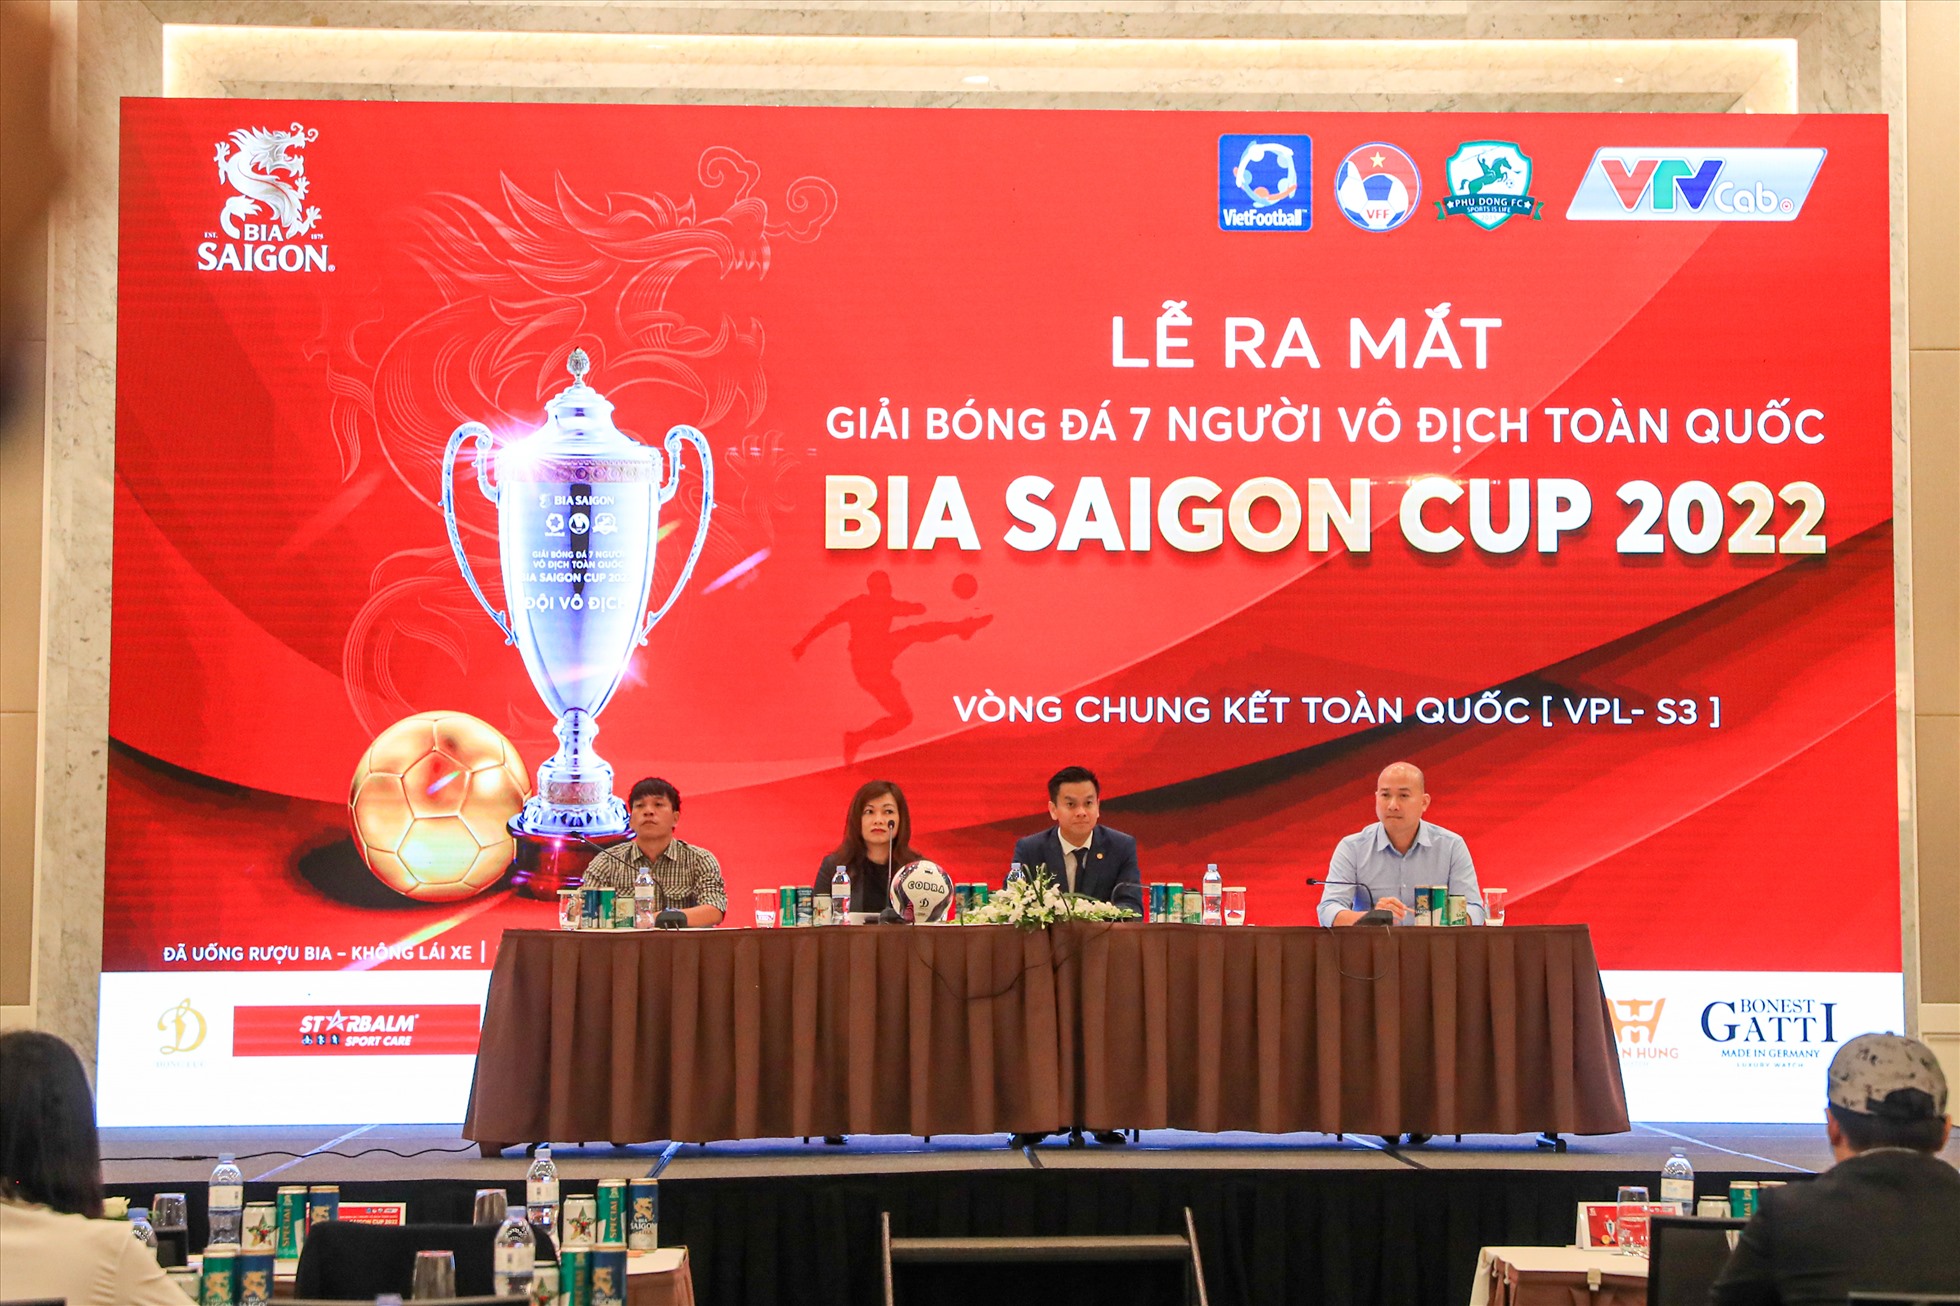 Buổi họp báo và ra mắt Giải bóng đá 7 người vô địch toàn quốc 2022. Ảnh: SBC